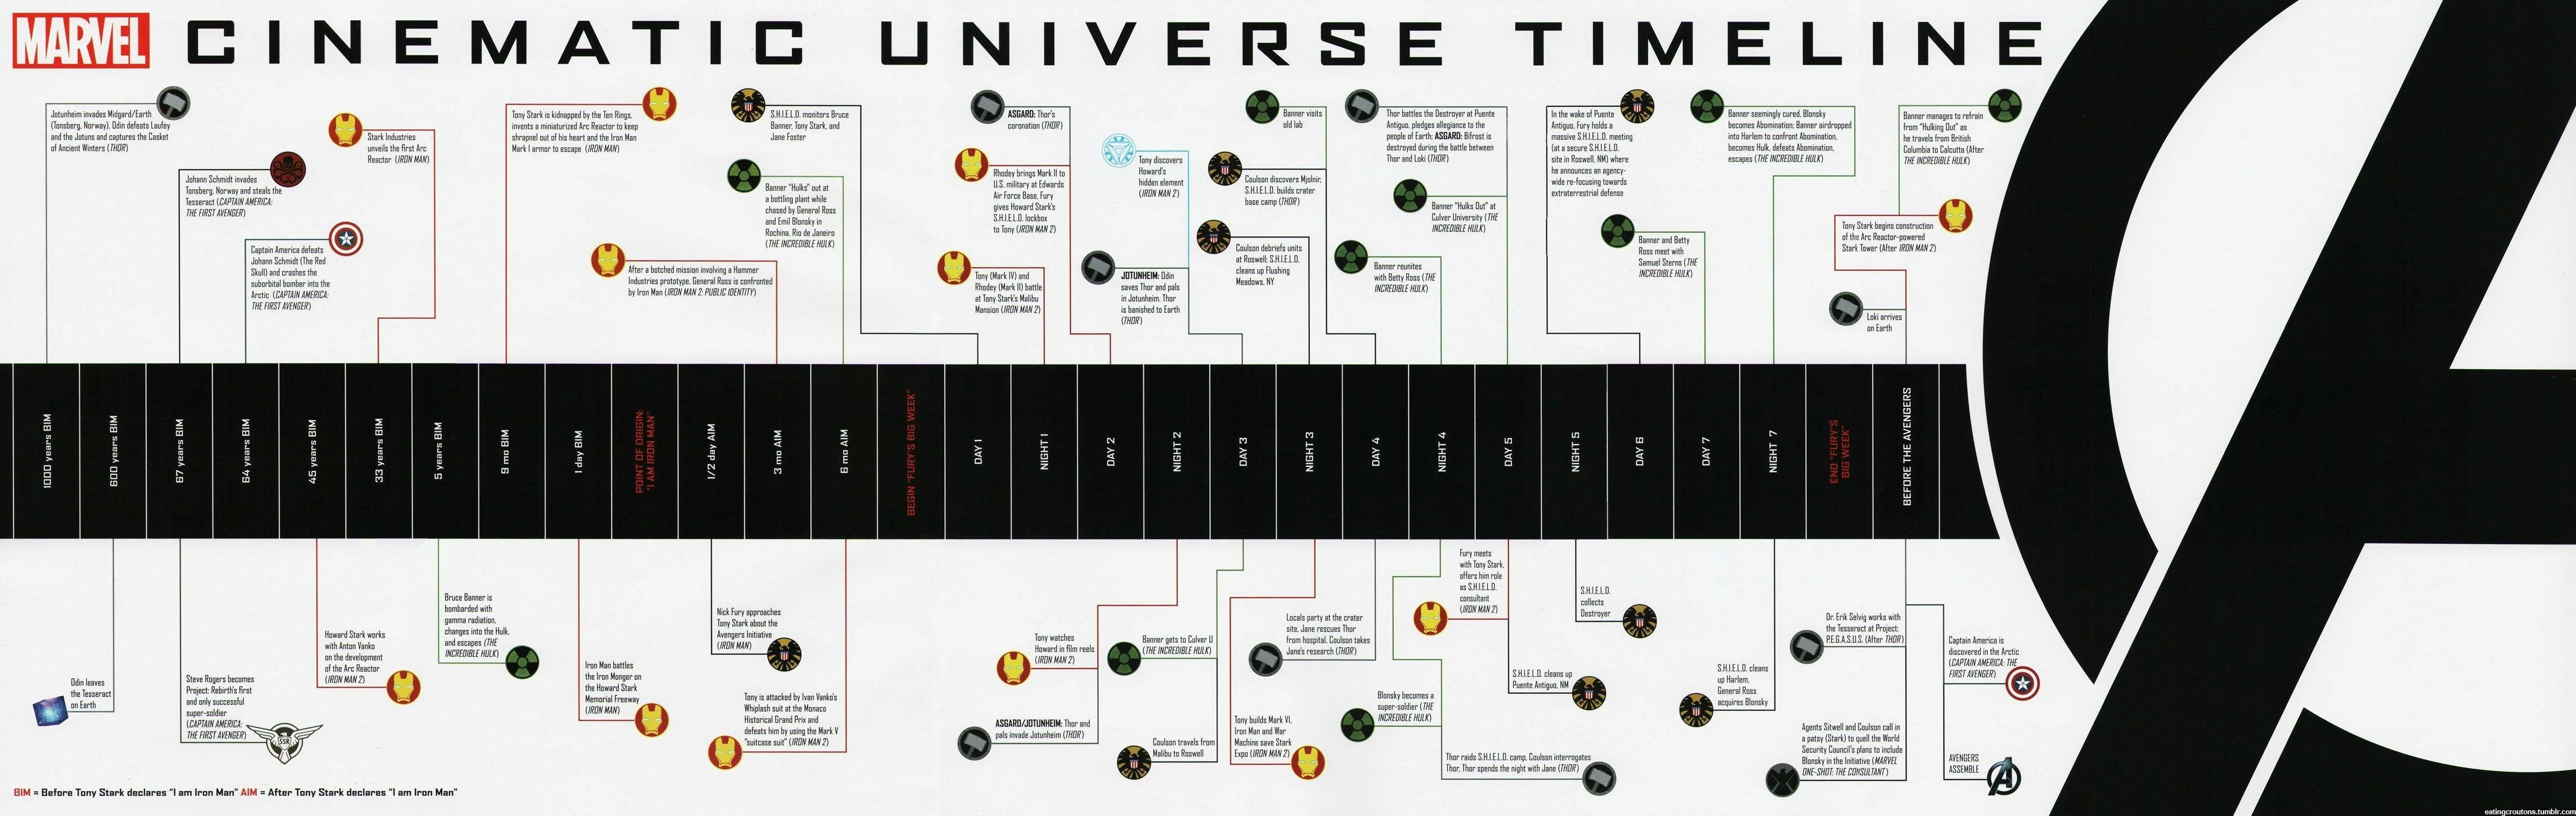 Объяснено: что не так с хронологией в киновселенной Marvel? - фото 1